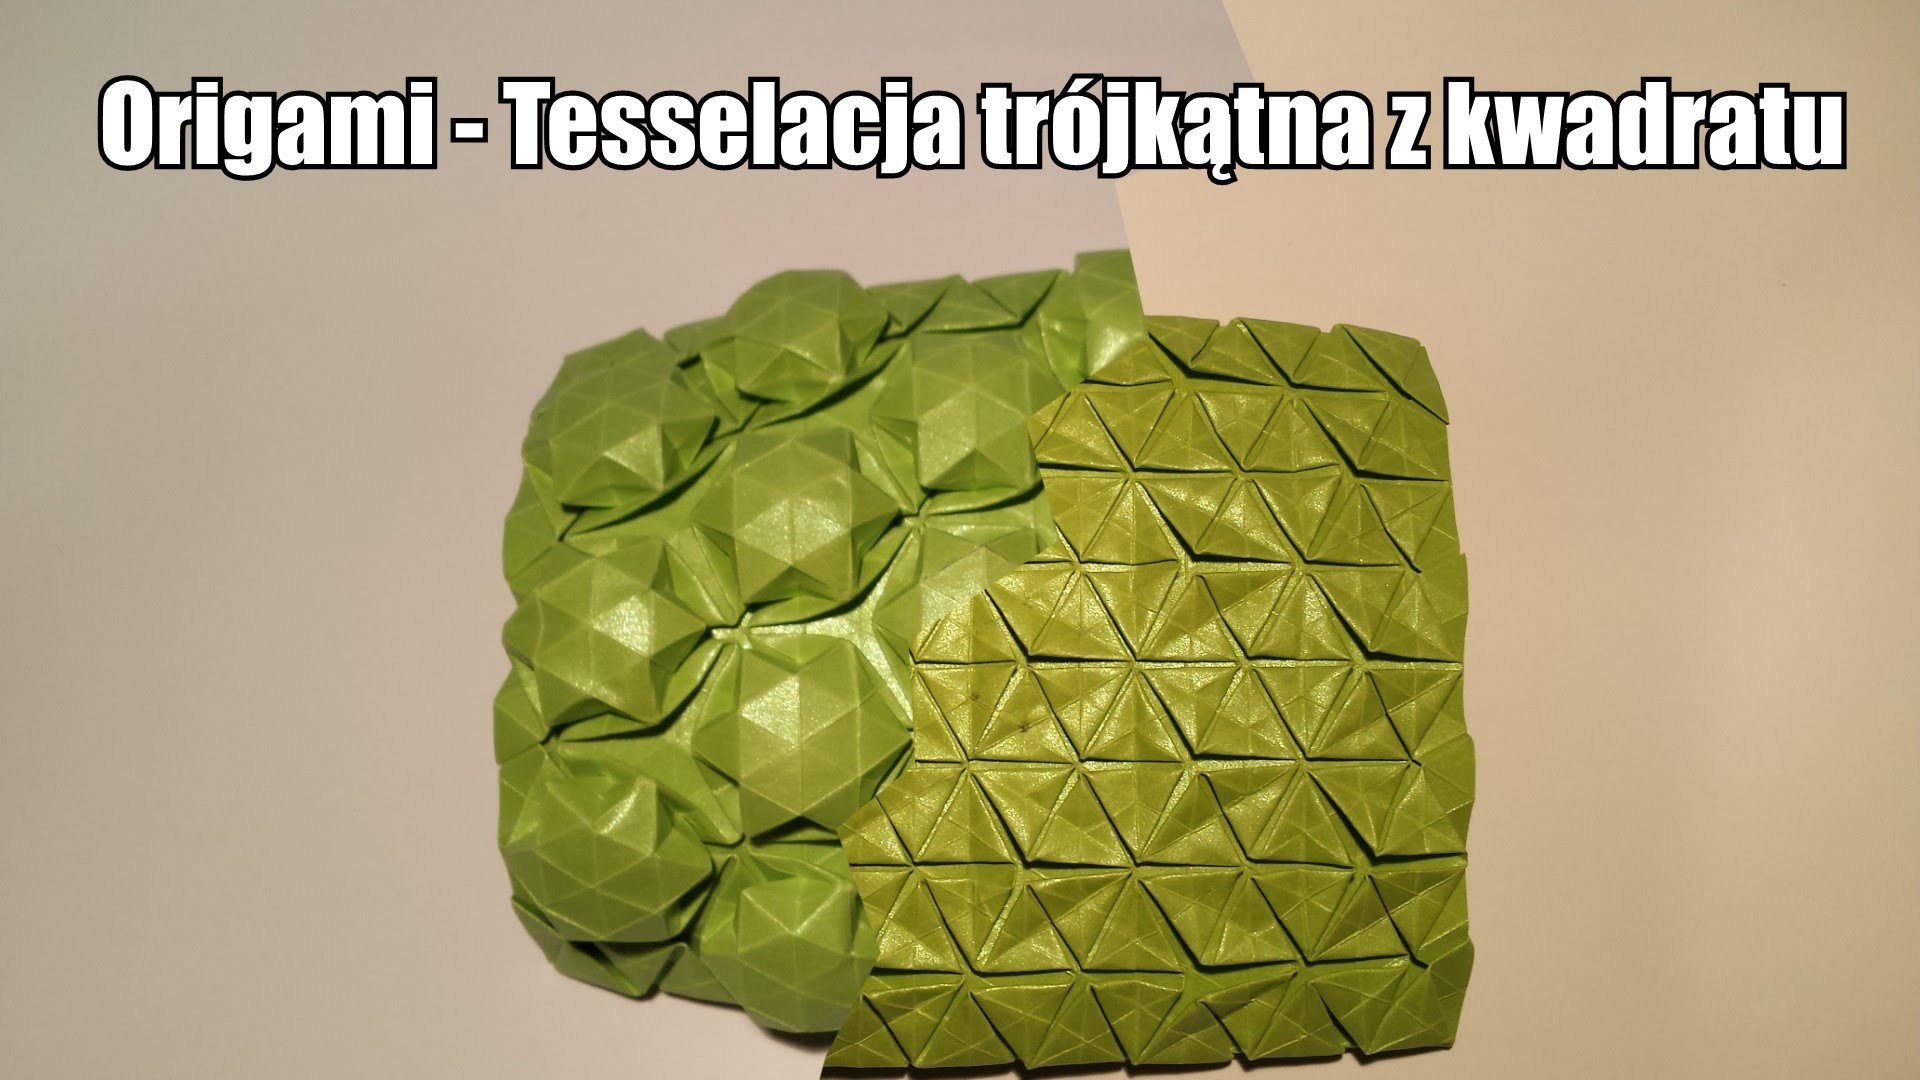 Origami - Tesselacja trójkątna z kwadratu